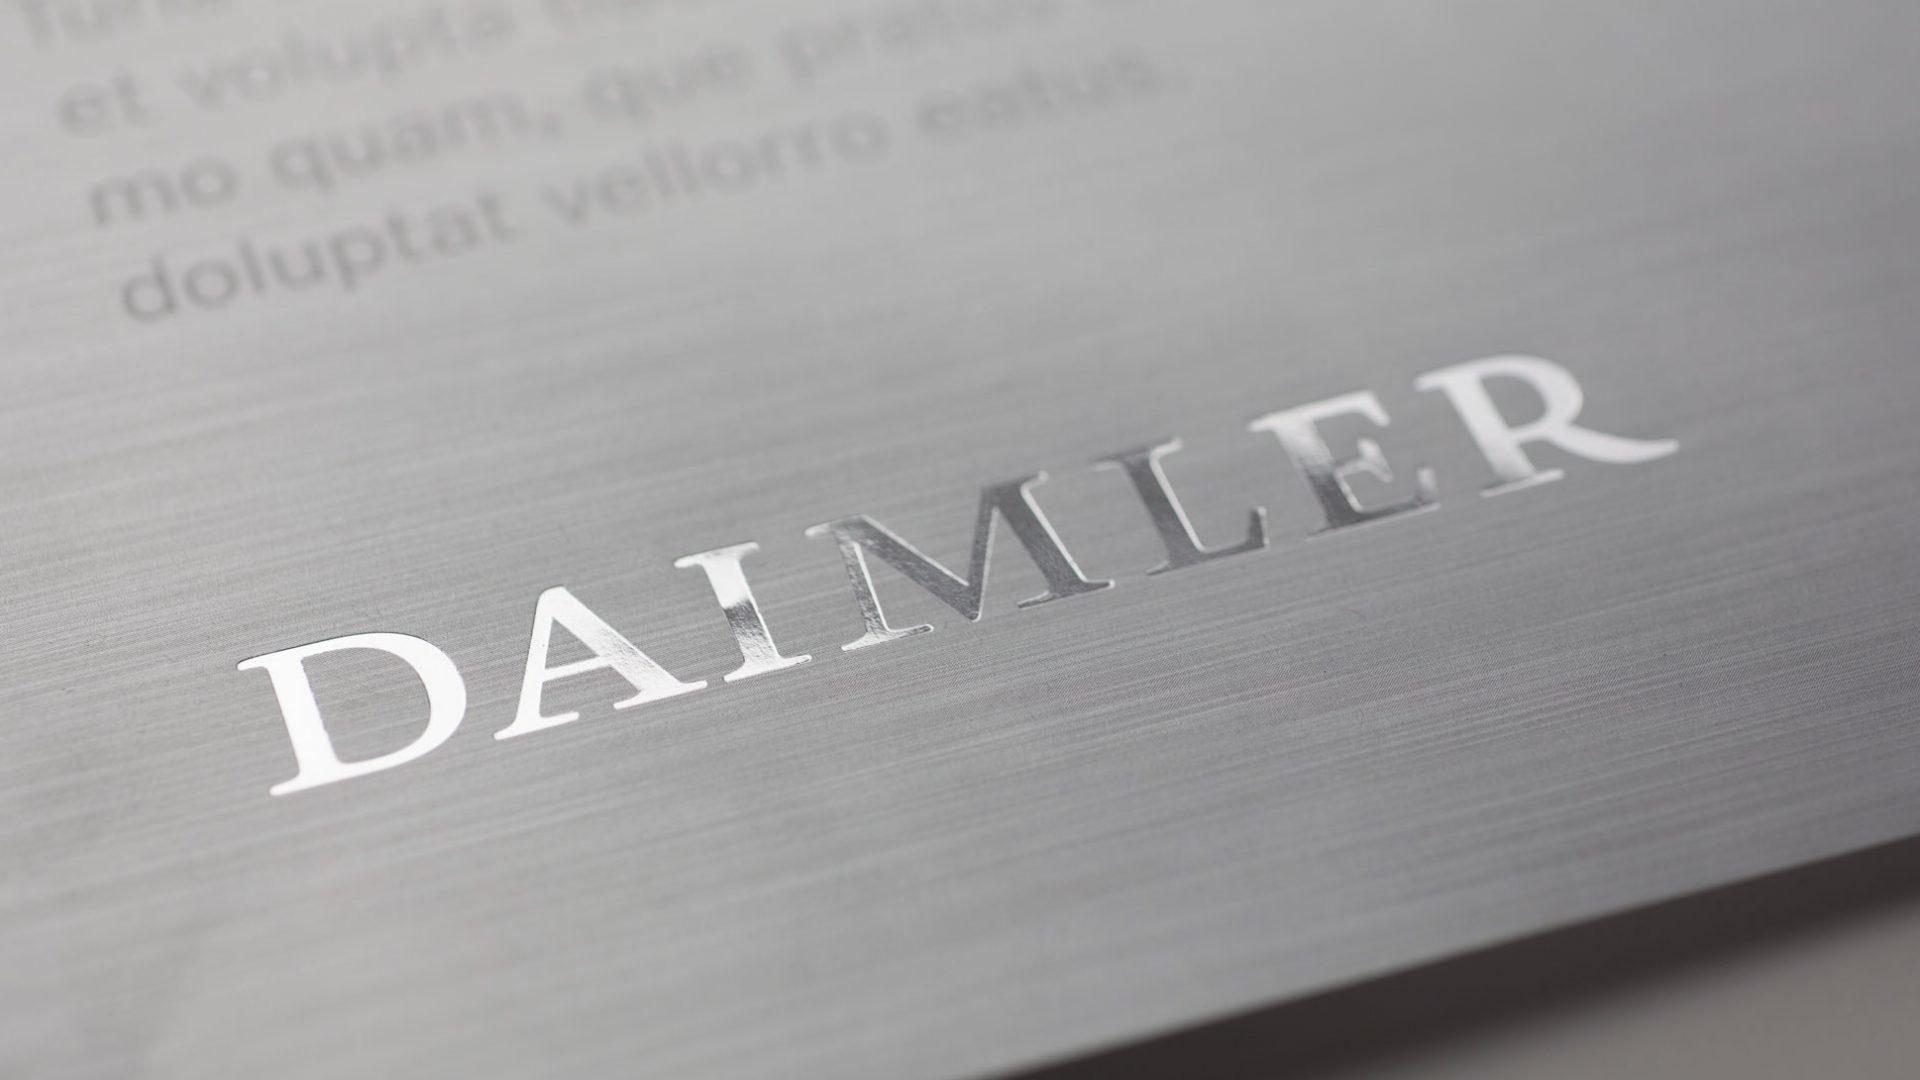 Daimler Logo - New Corporate Design for Daimler. Realgestalt GmbH, Berlin